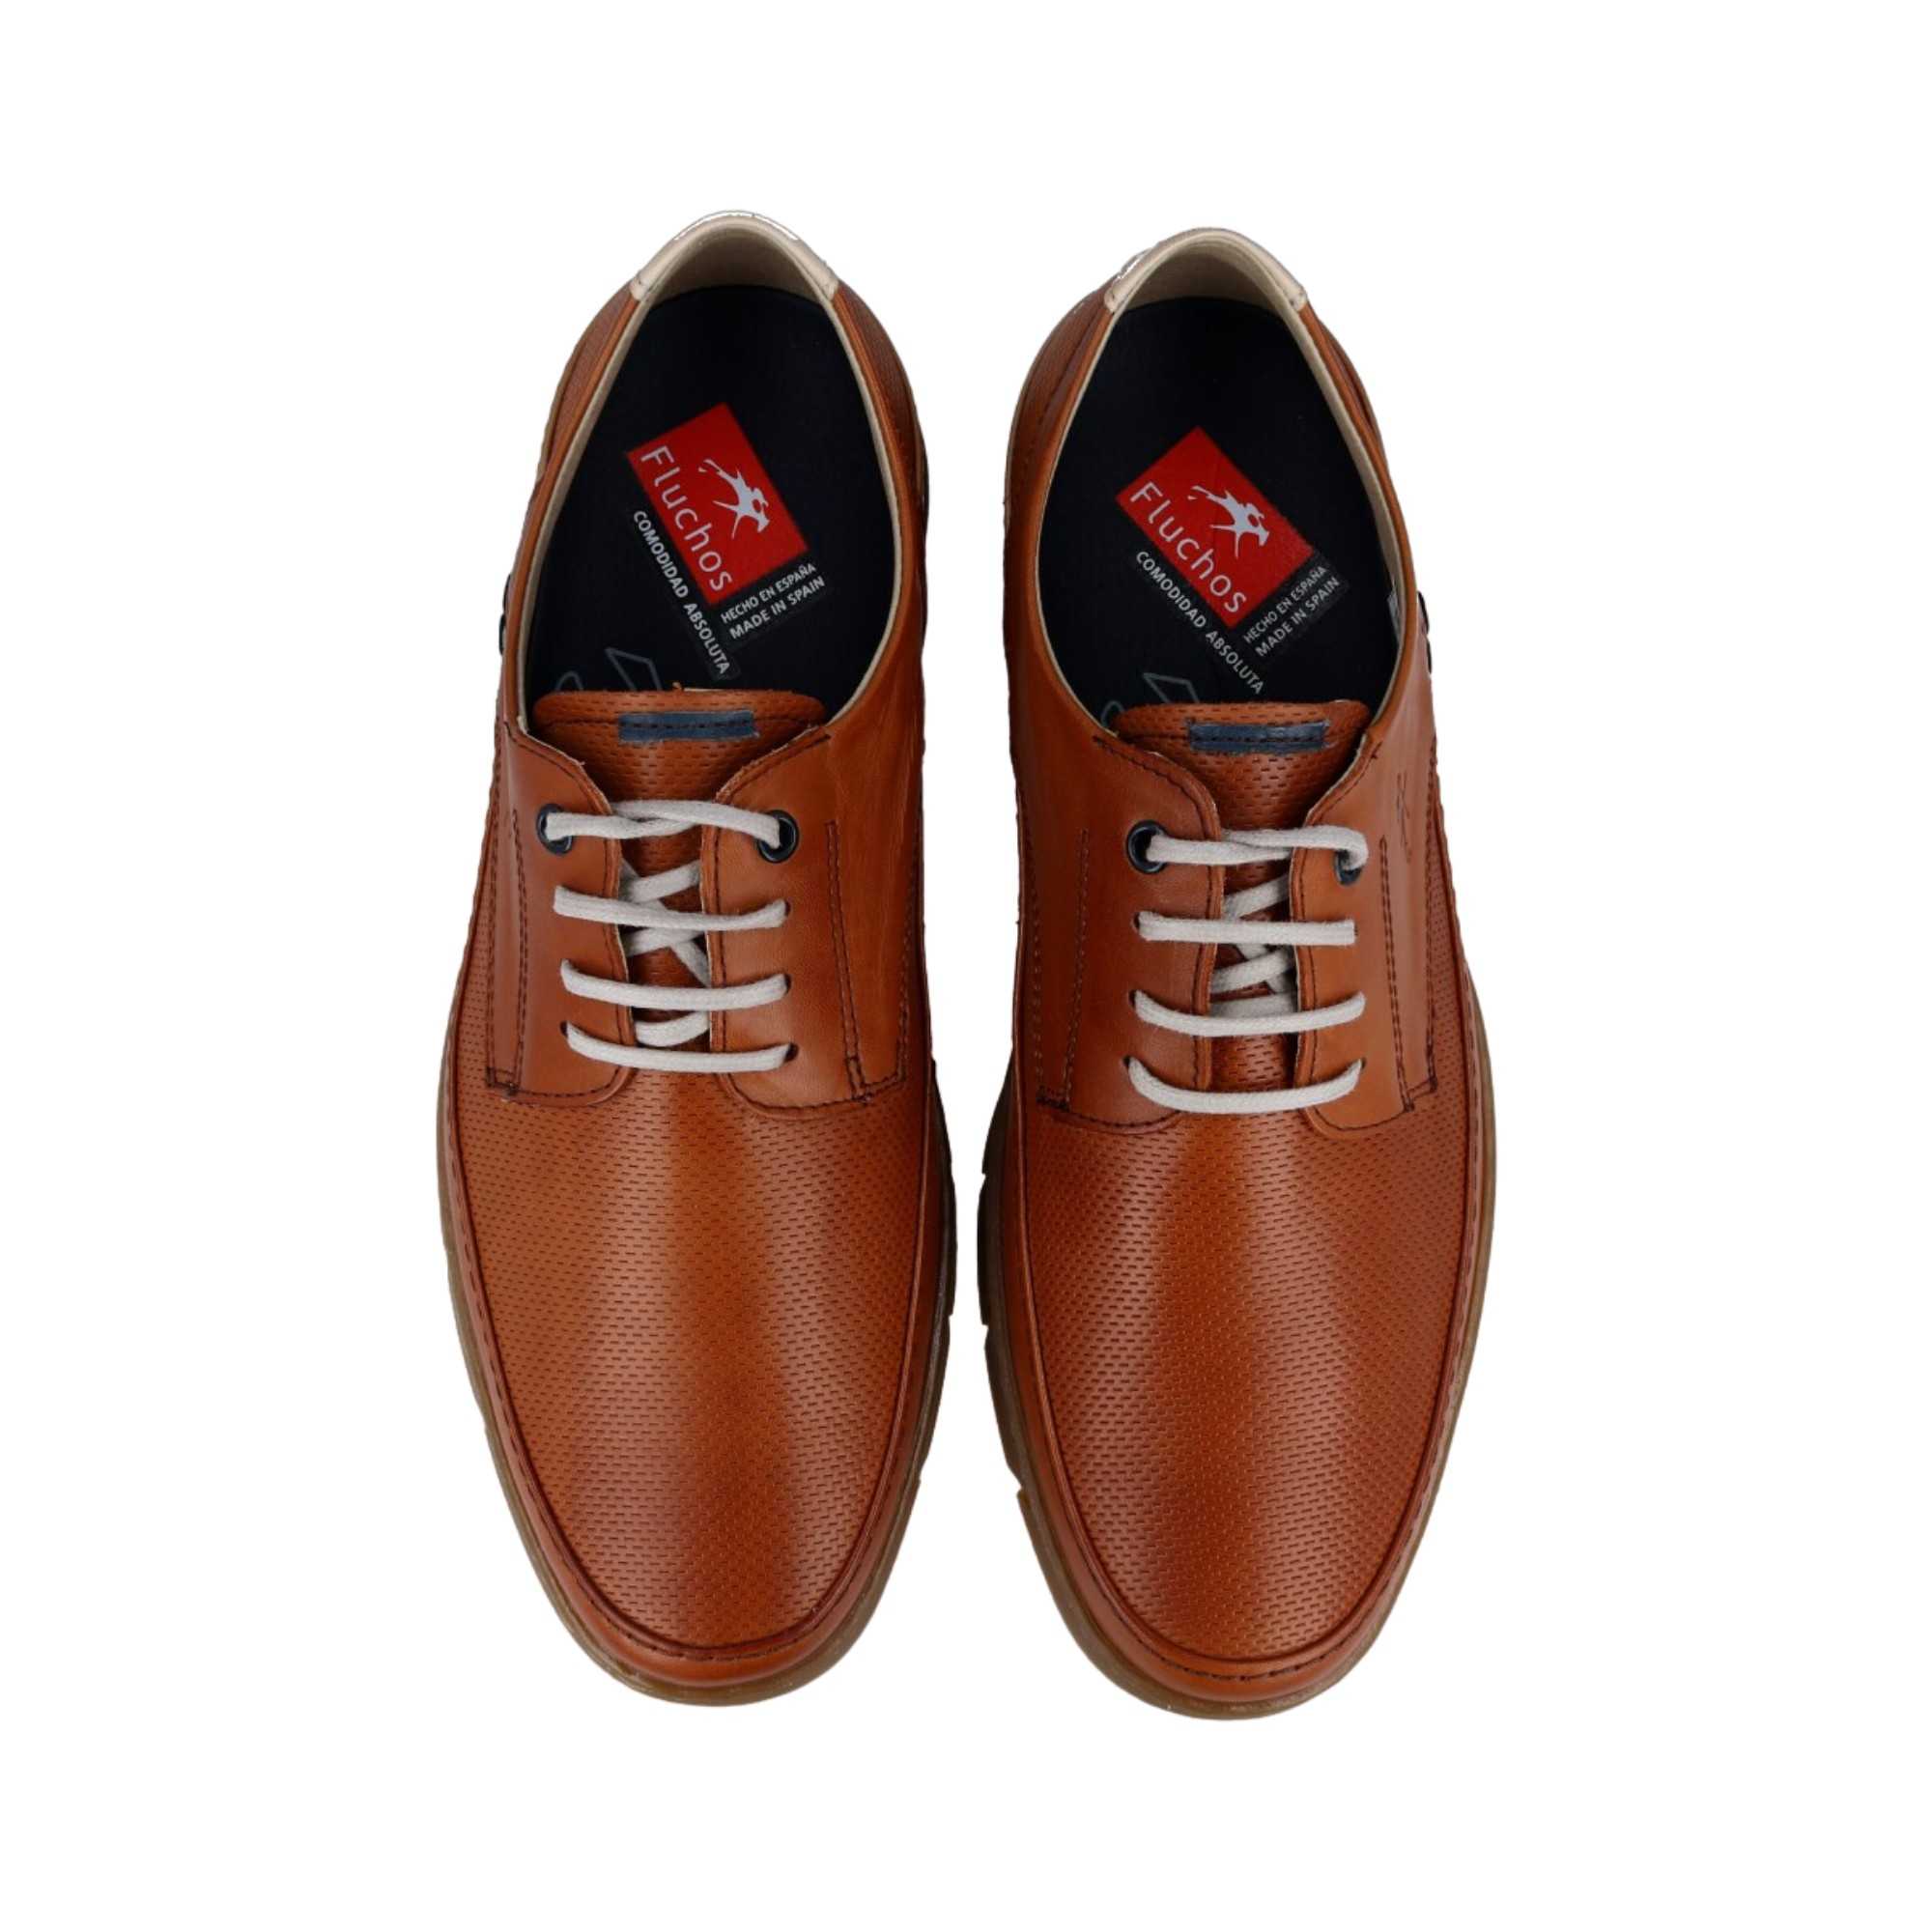 Zapatos Fluchos para hombre con cierre de cordones, color marrón